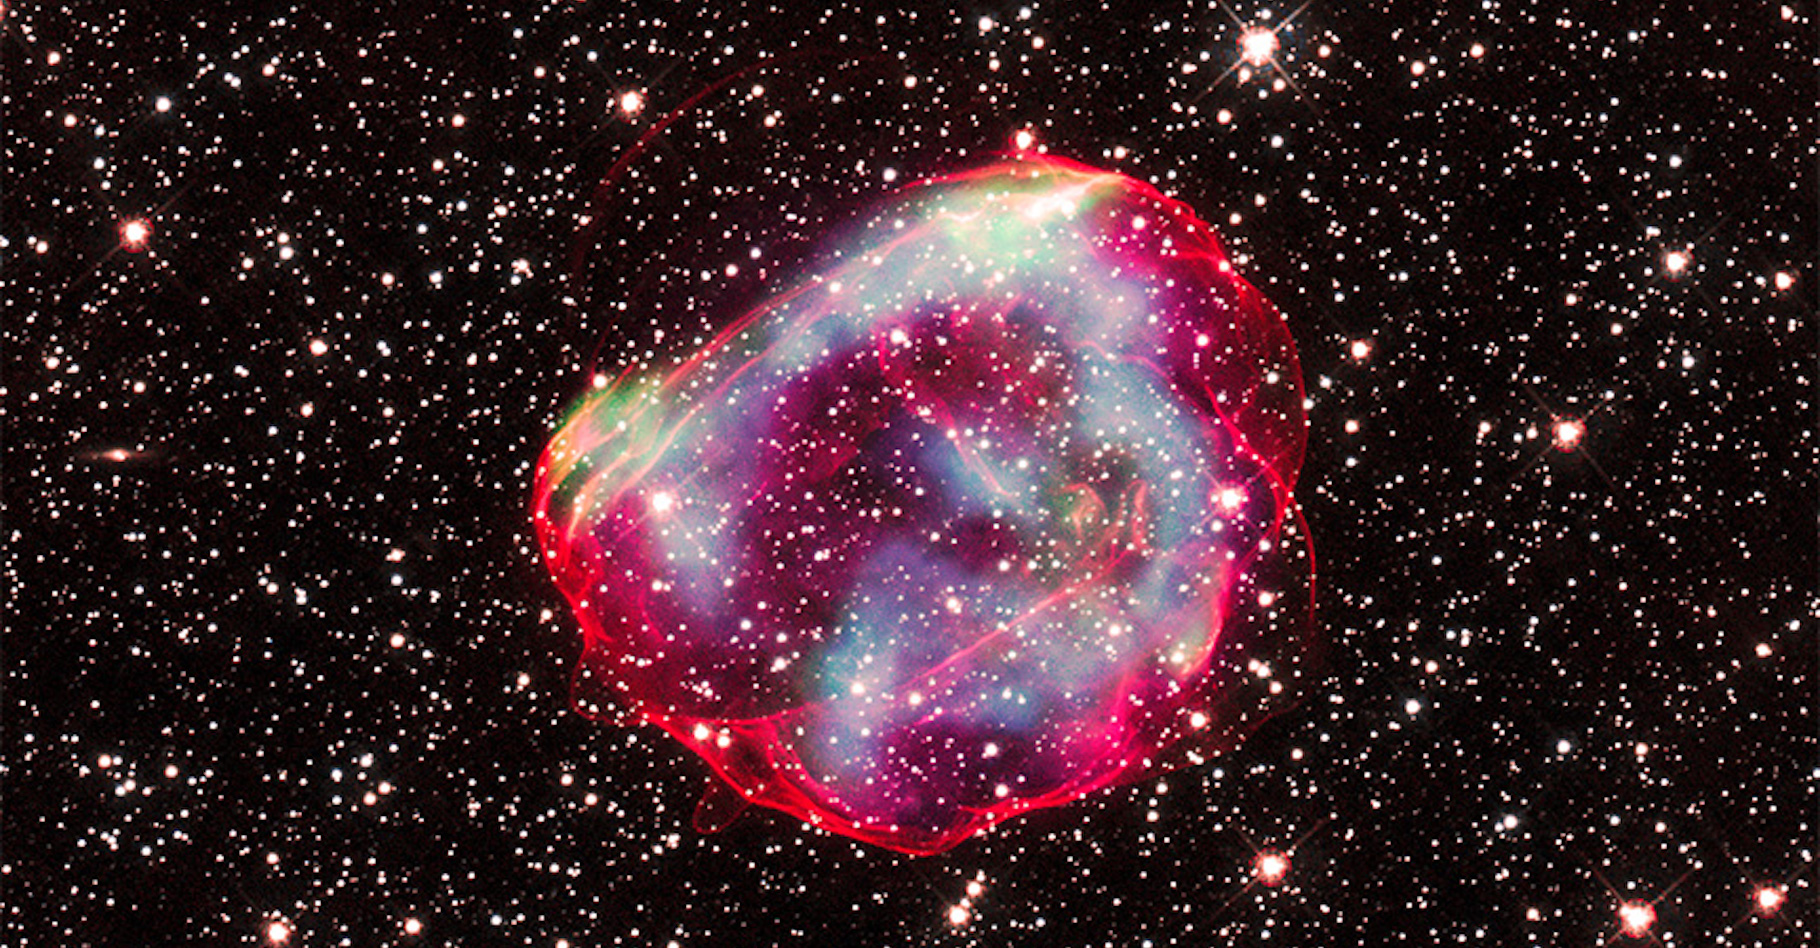 Ces traînées de gaz sont celles laissées par la supernova SNR 0519, dans la galaxie du Grand Nuage de Magellan, voisine de la nôtre. On y devine les coquilles rouges&nbsp;restant de l’étoile naine blanche qui lui a donné naissance. Selon les chercheurs, sa lumière est arrivée jusqu’à notre Terre il y a environ 600 ans. © X-ray : Nasa/CXC/GSFC/B. J. Williams et al. ; Optical : Nasa/ESA/STScI